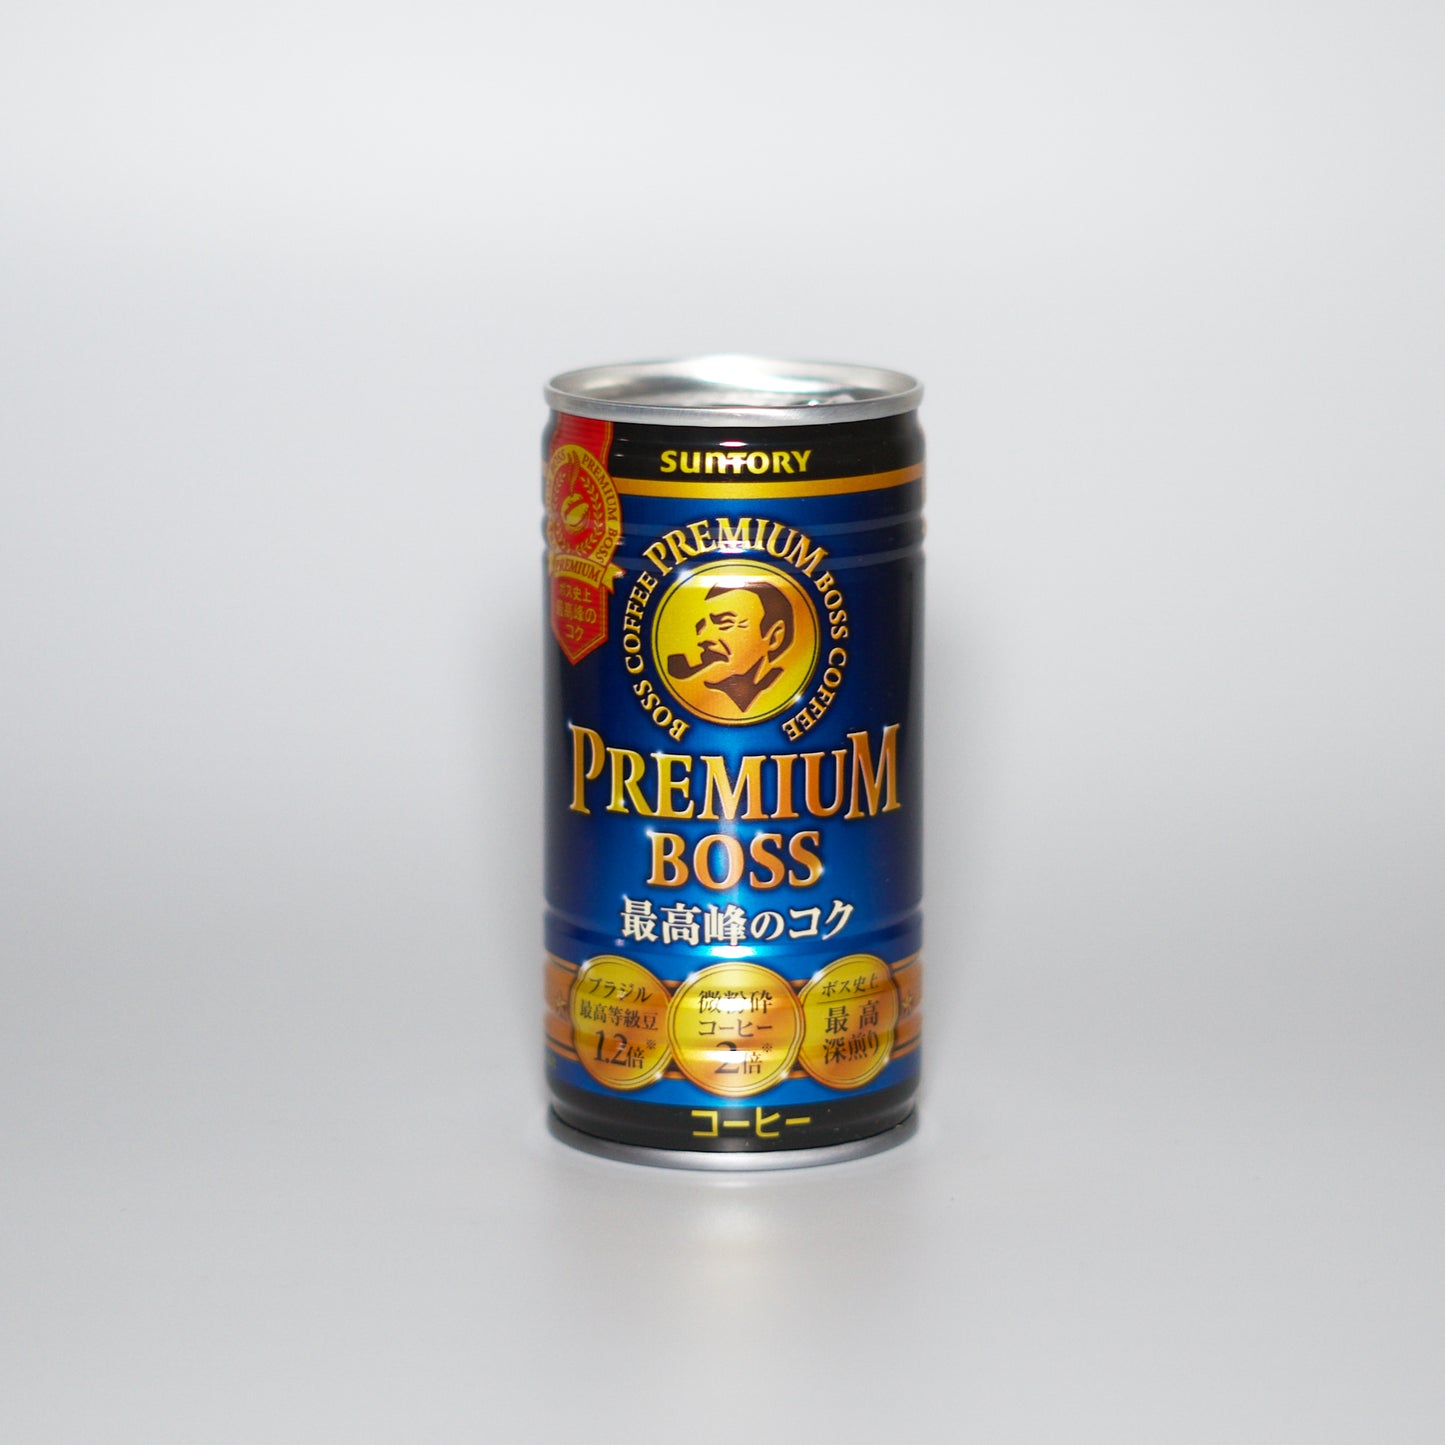 Expired - Suntory Boss Premium Coffee 185ml